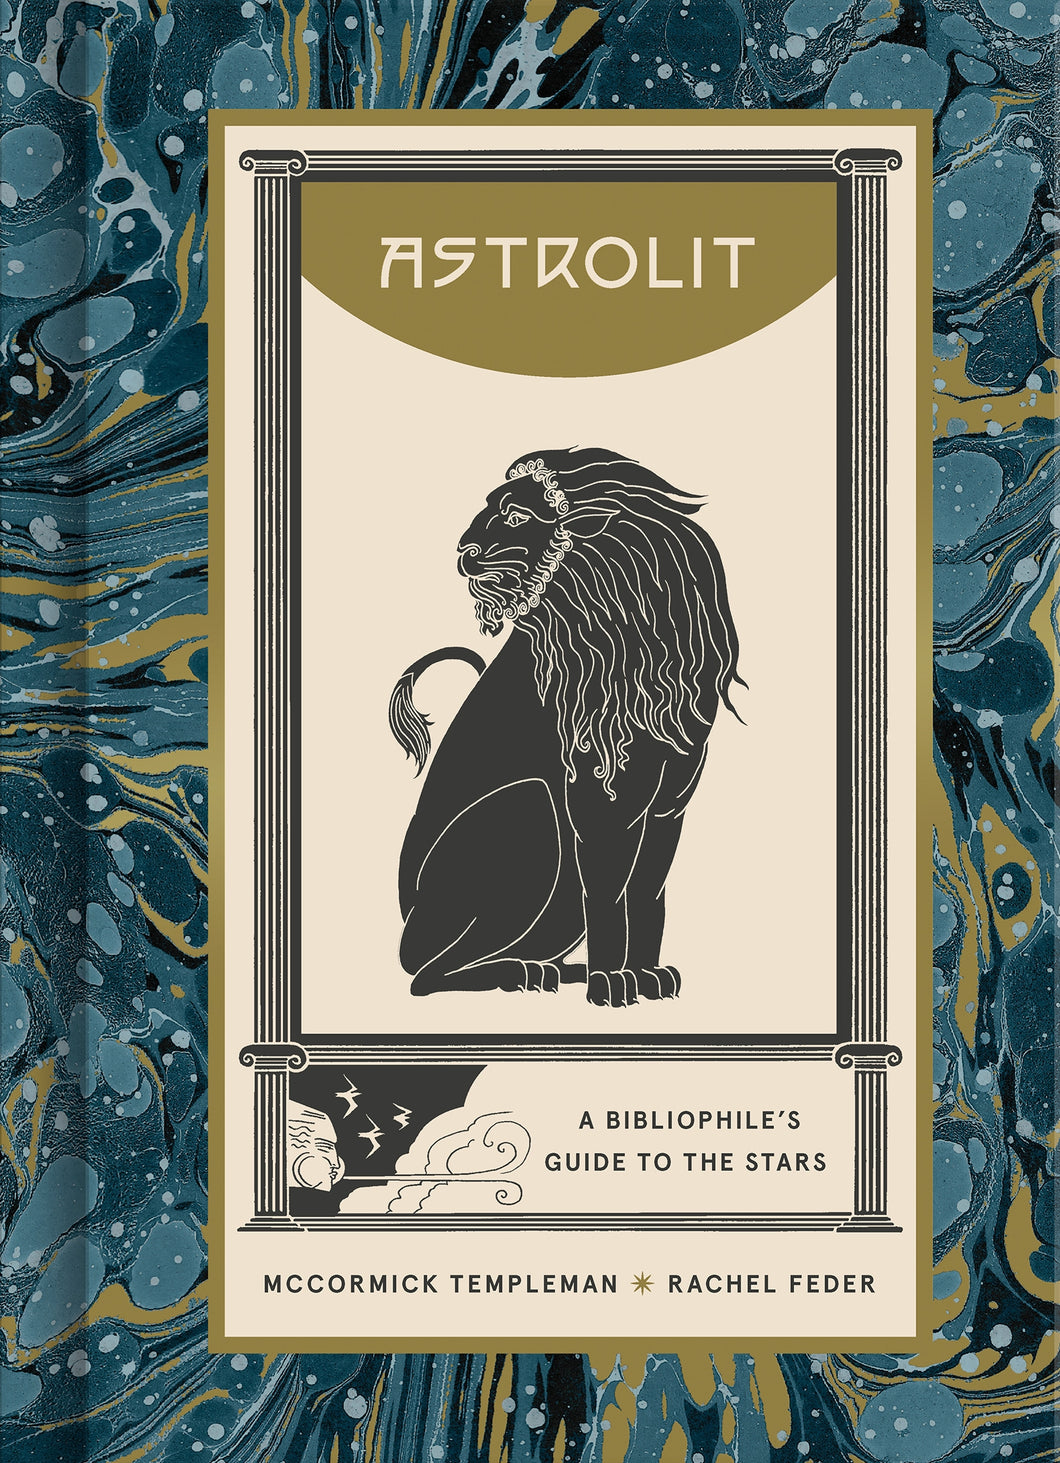 AstroLit: A Bibliophile's Guide to the Stars ร้านหนังสือและสิ่งของ เป็นร้านหนังสือภาษาอังกฤษหายาก และร้านกาแฟ หรือ บุ๊คคาเฟ่ ตั้งอยู่สุขุมวิท กรุงเทพ